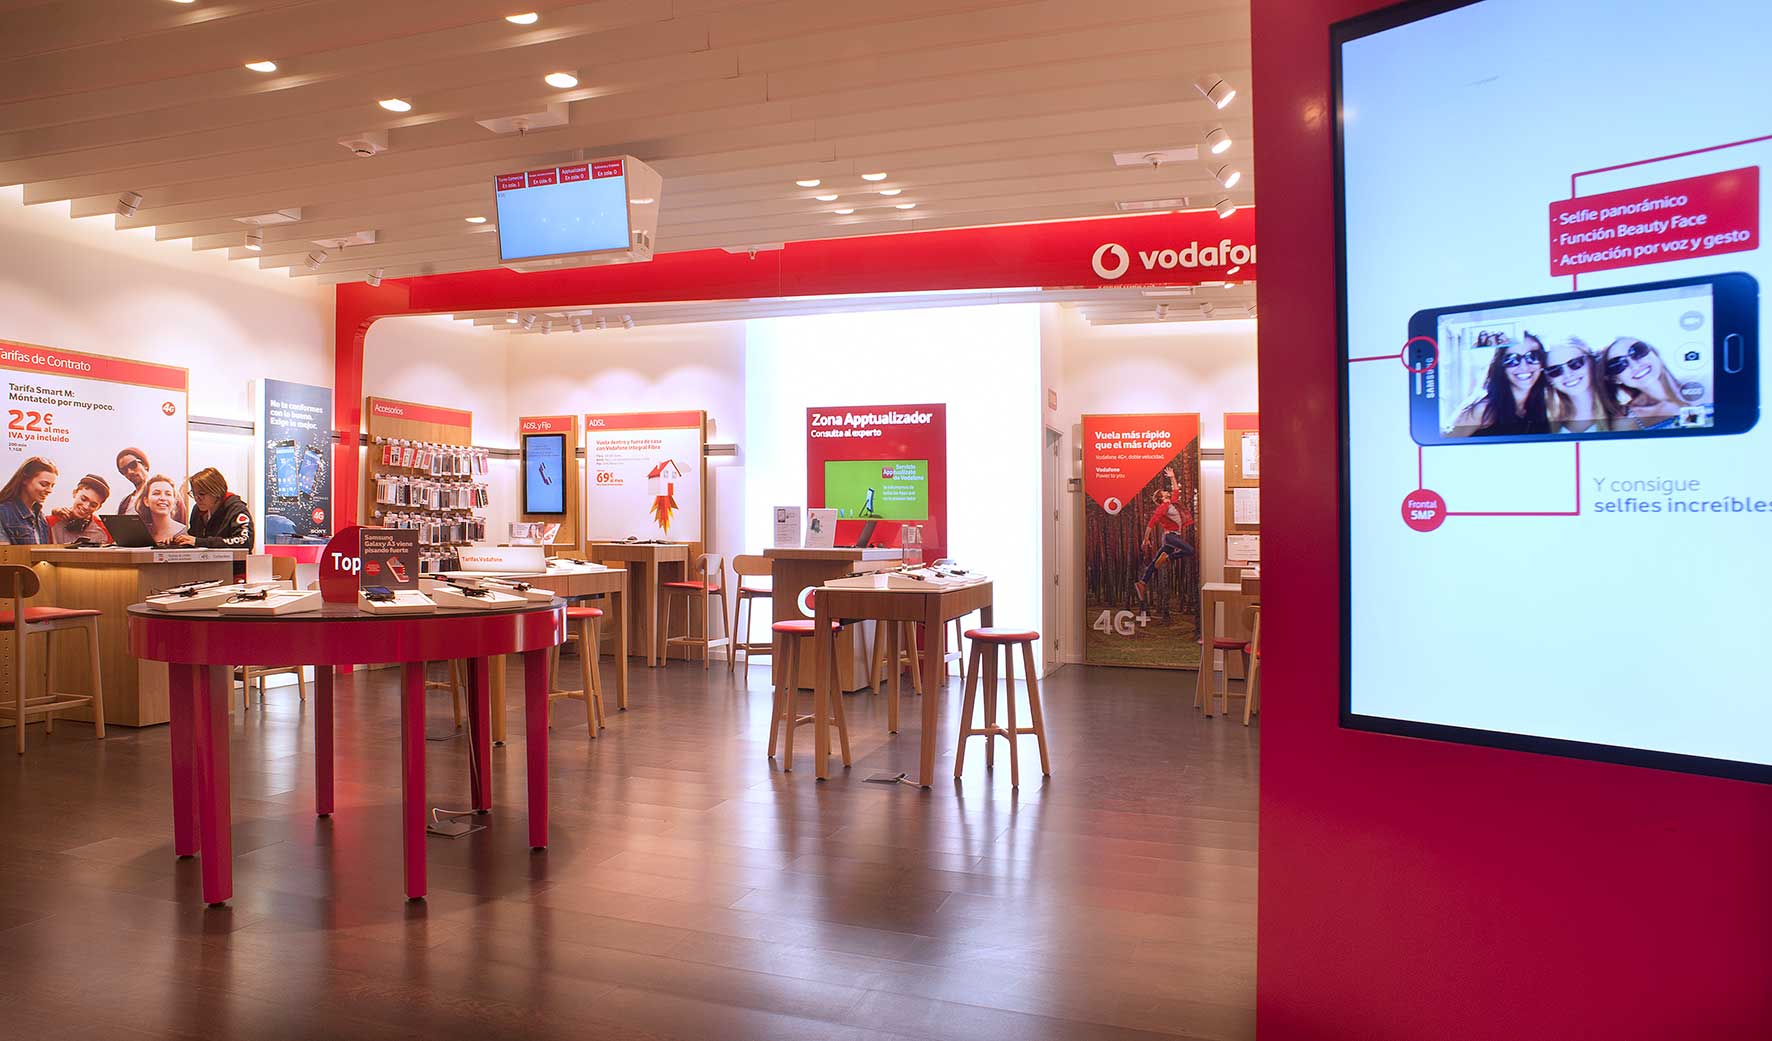 Decoración integral en puntos de venta para Vodafone